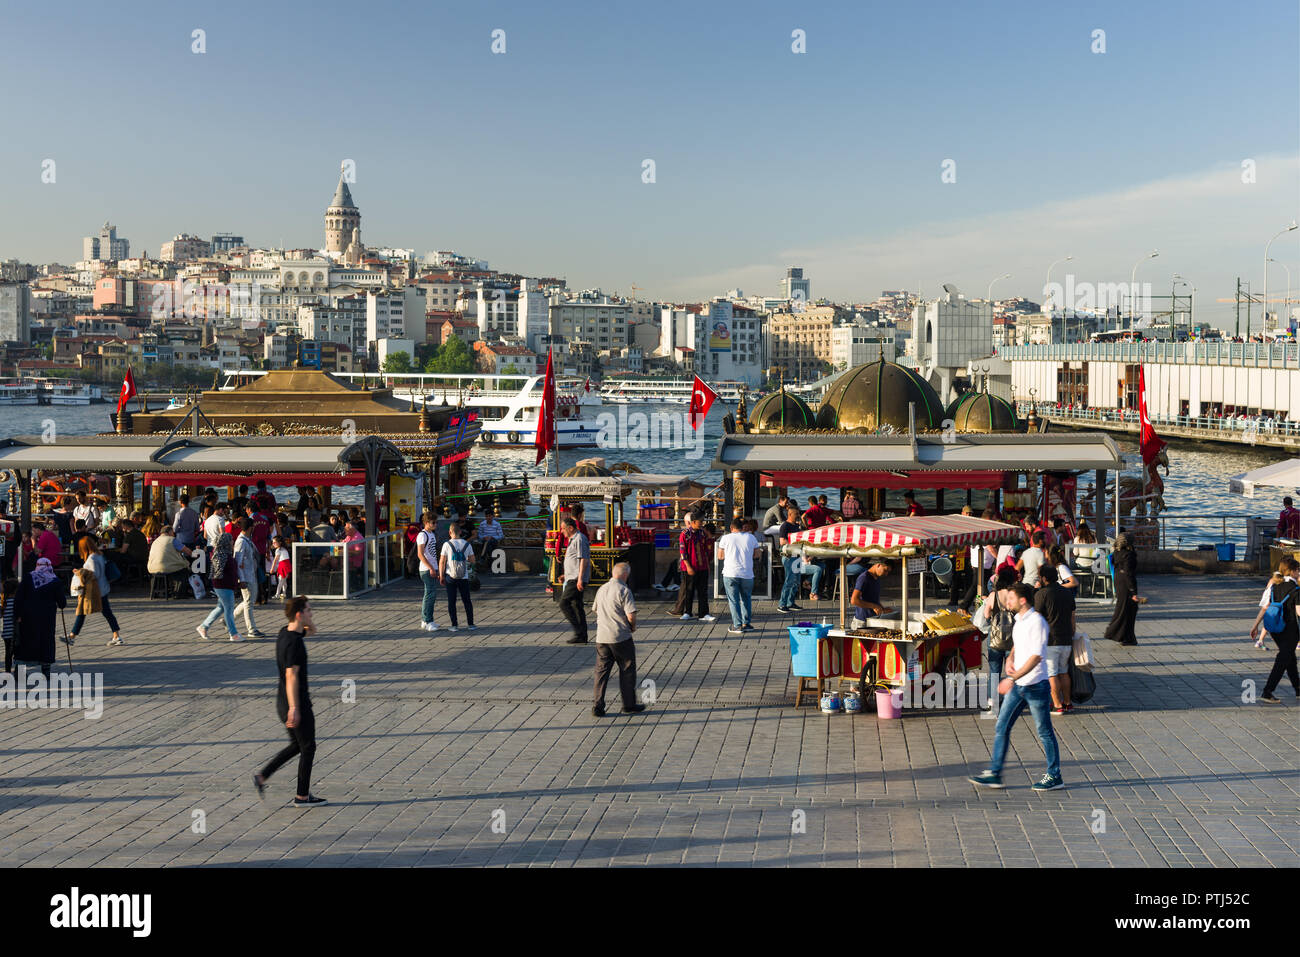 Eminonu bazaar con stand gastronomici e ristoranti, traghetti, lo stretto del Bosforo, Torre Galata, il Ponte di Galata Karakoy e può essere visto in background, Foto Stock